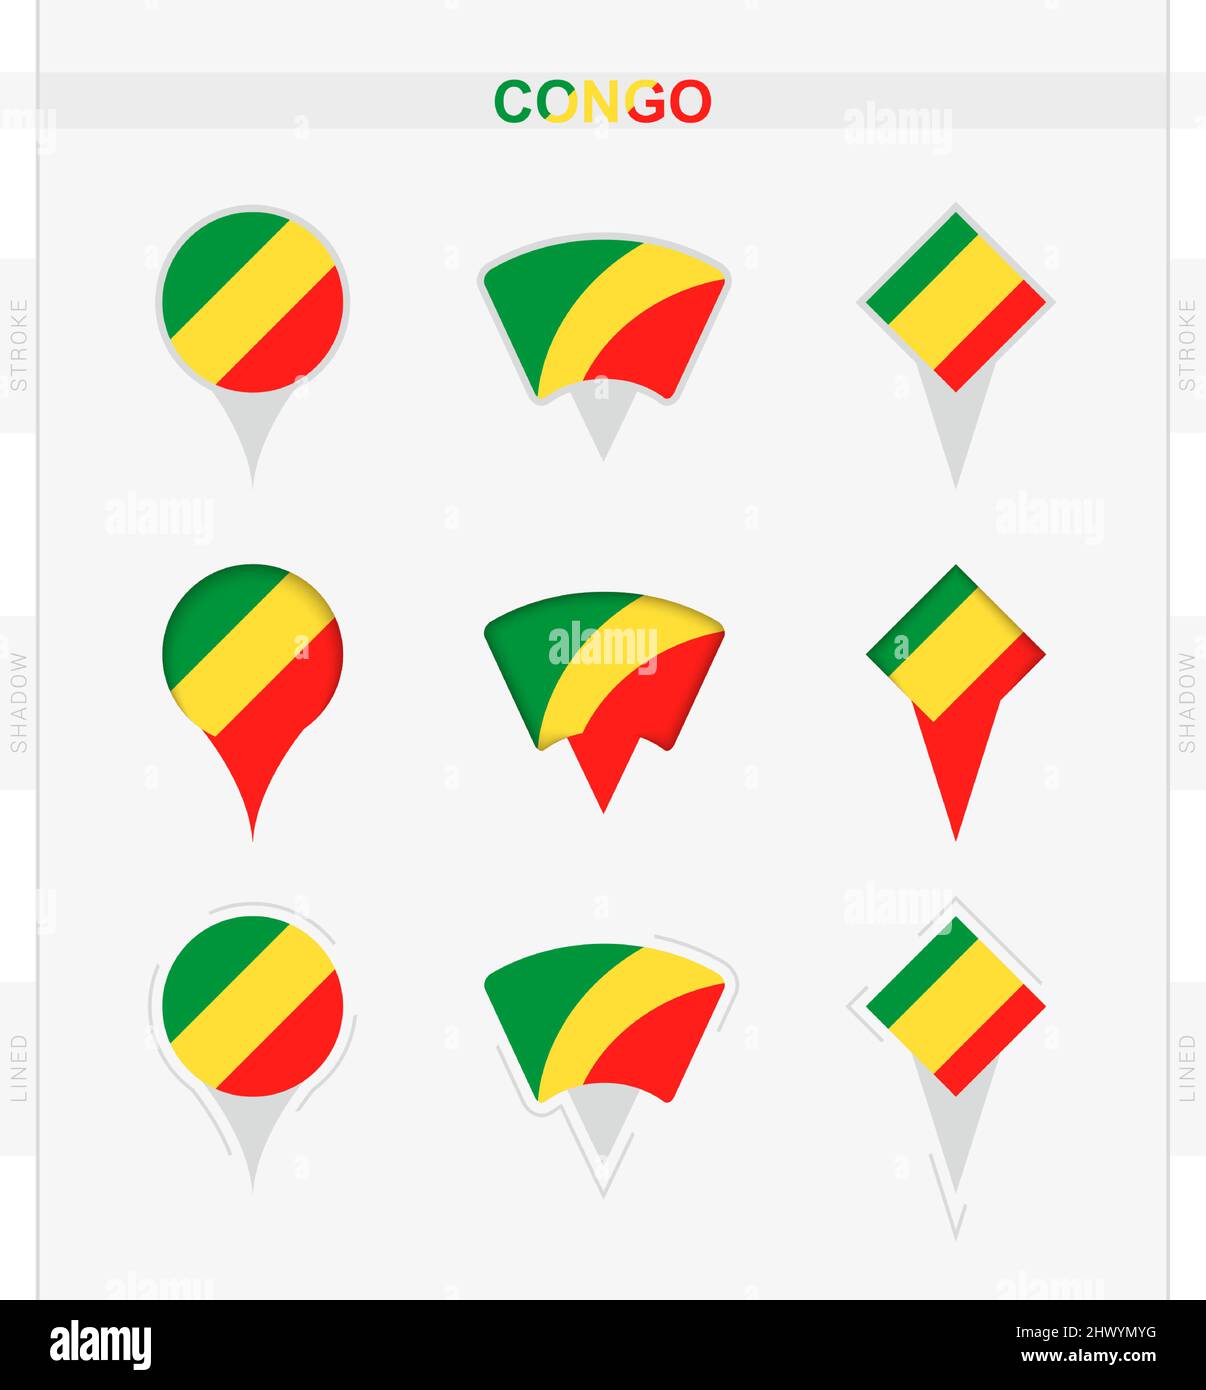 Drapeau Congo, ensemble d'icônes de localisation du drapeau Congo. Illustration vectorielle des symboles nationaux. Illustration de Vecteur